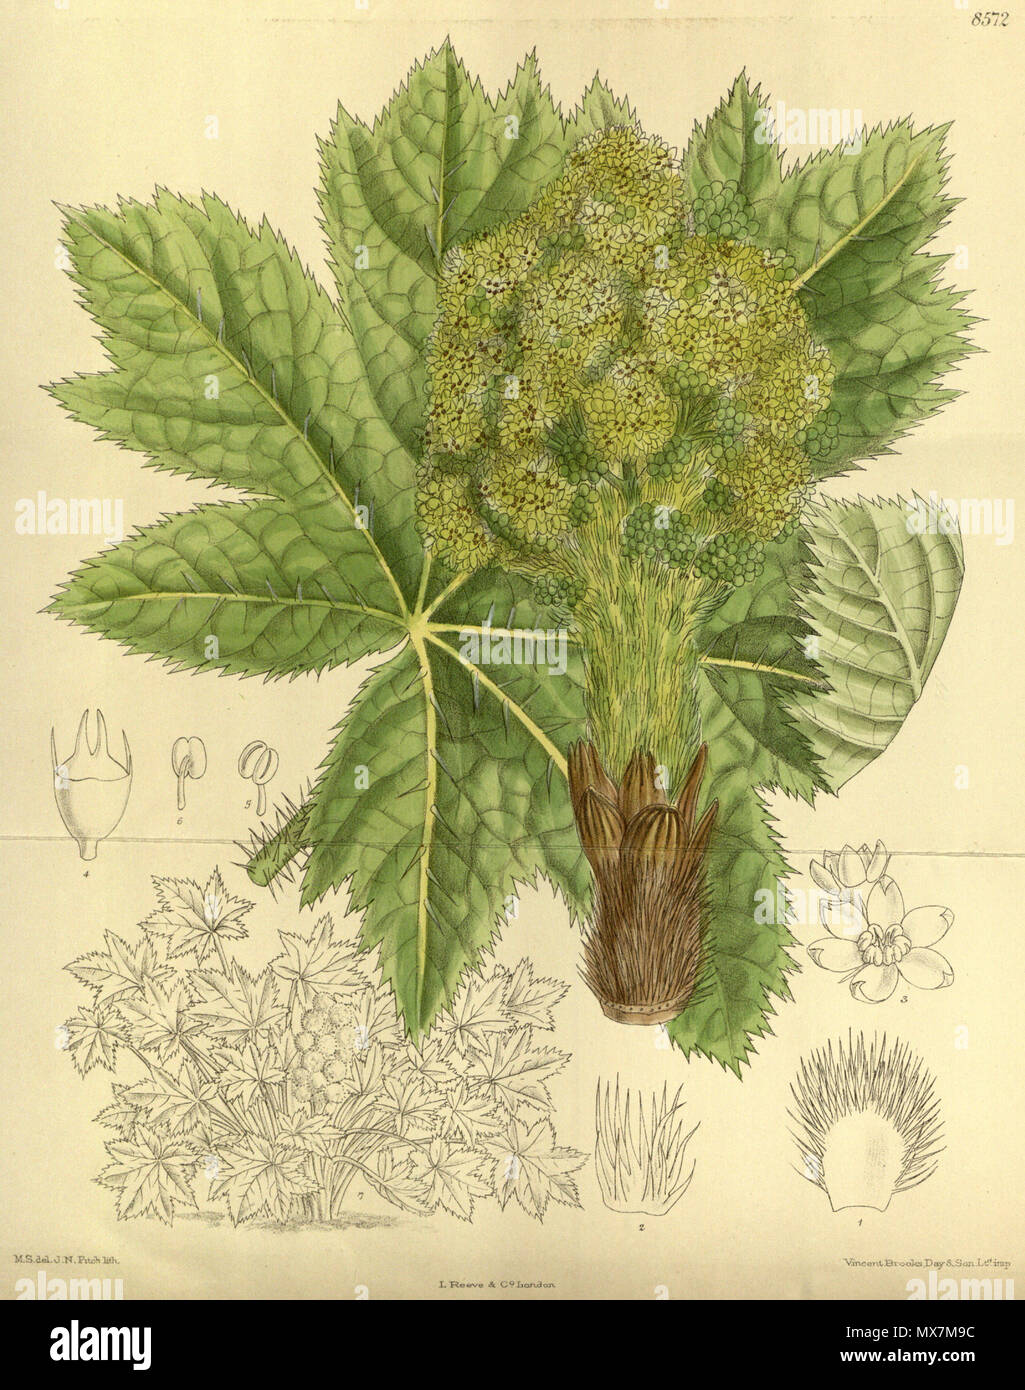 . Echinopanax horridus (= Oplopanax horridus), Araliaceae . 1914. M.S. del., J.N.Fitch lith. 177 Echinopanax horridus 140-8572 Stock Photo